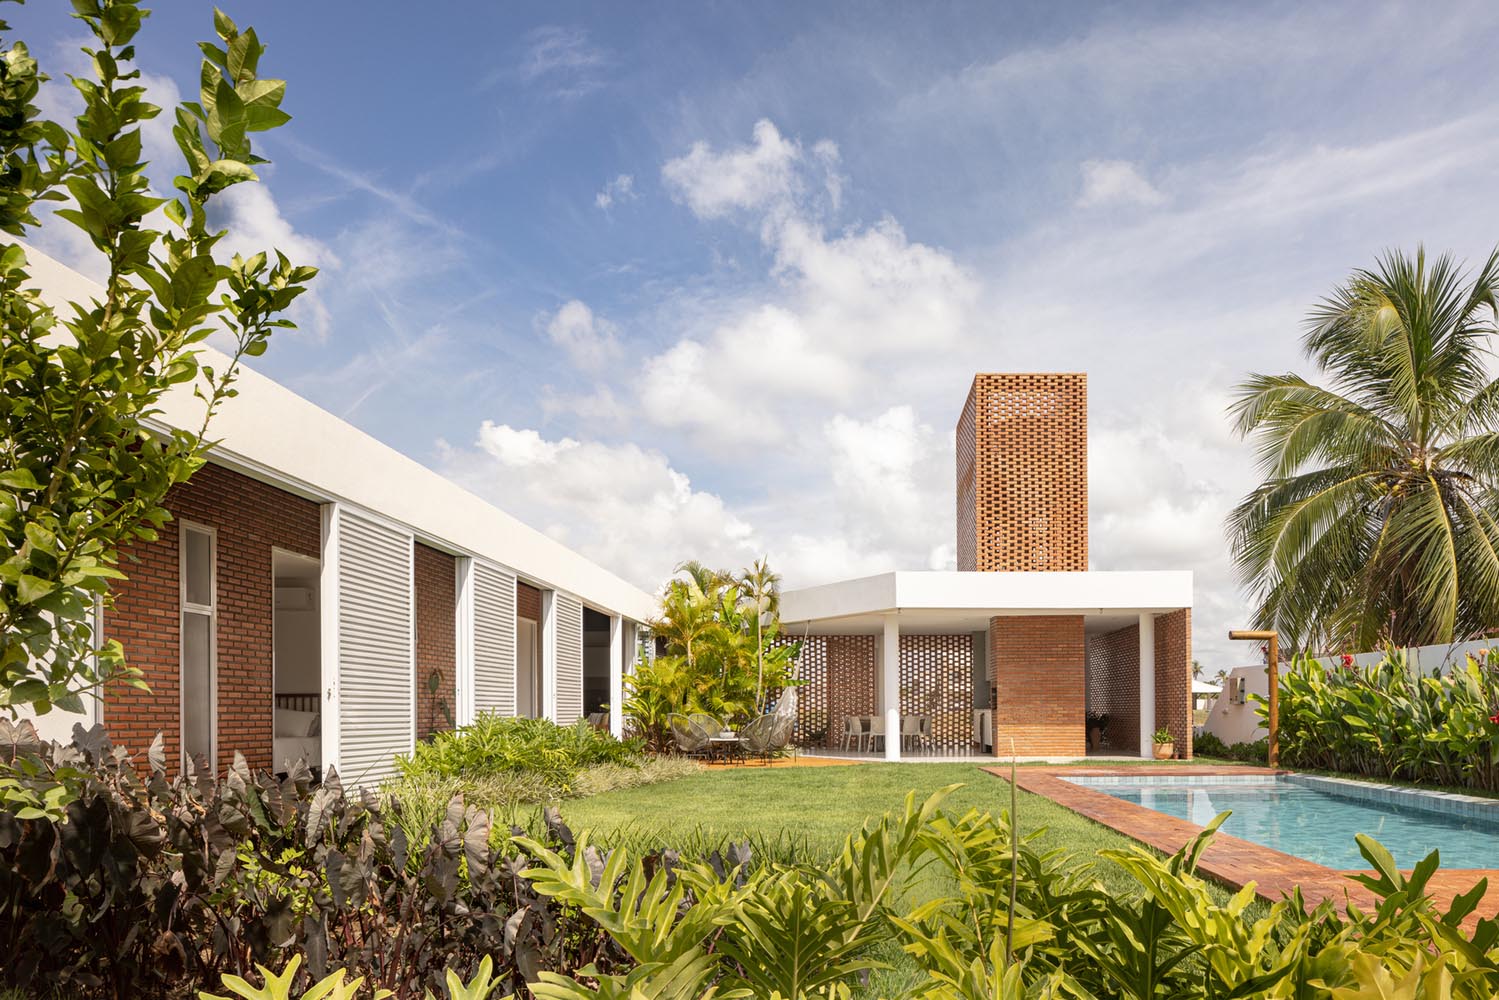 住宅設計,聯排別墅,別墅設計,紅磚別墅,Coletivo de Arquitetos,巴西,庭院別墅,300㎡